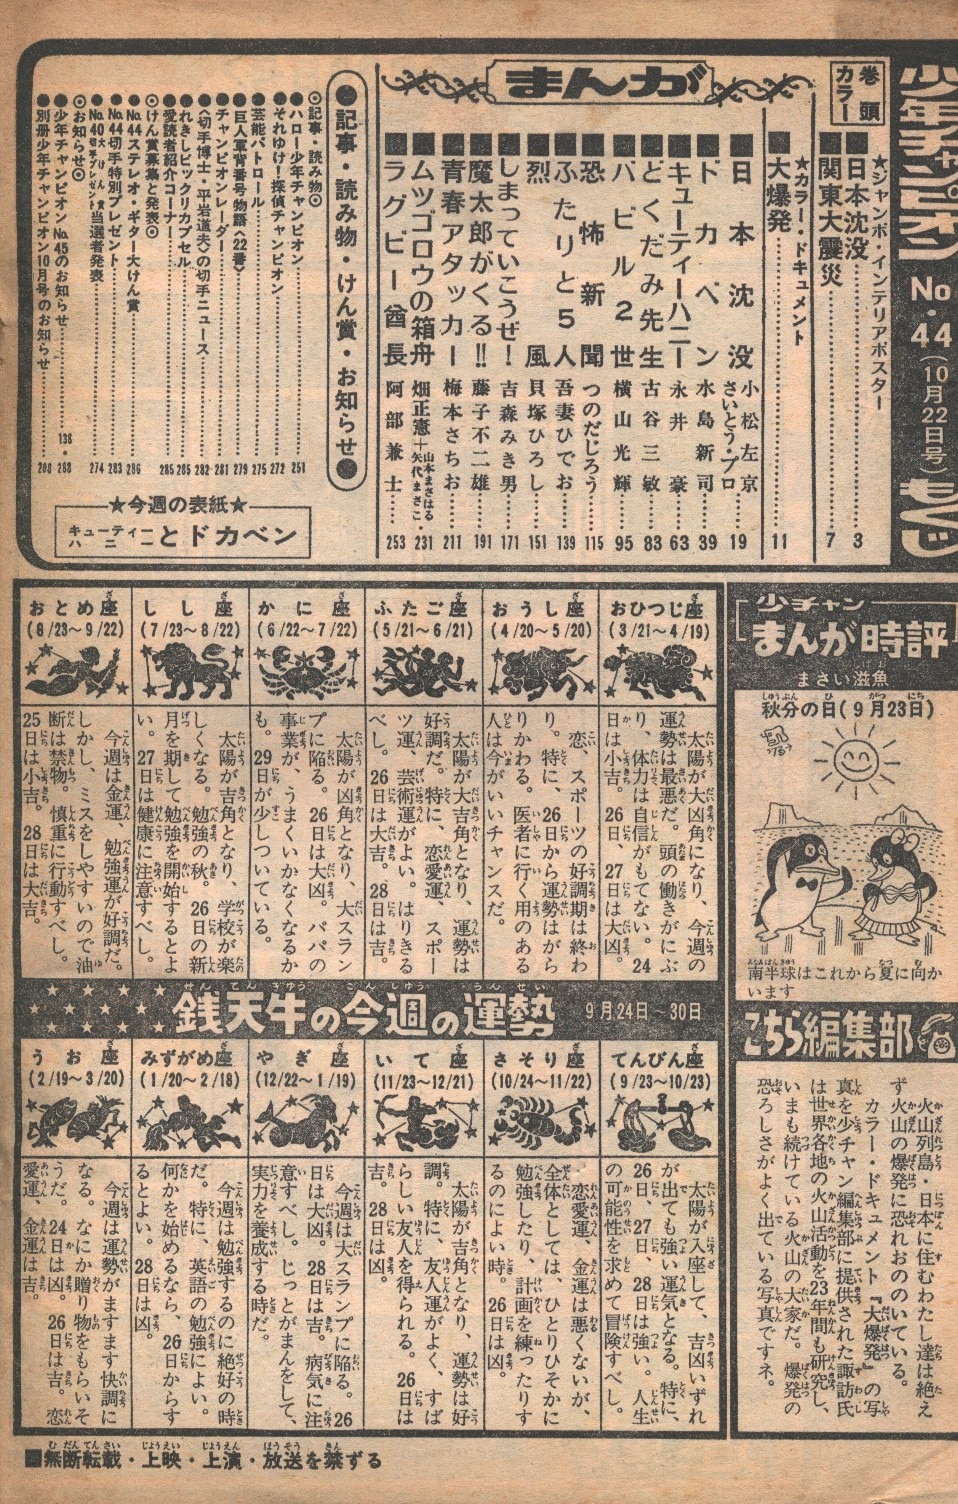 秋田書店 週刊少年チャンピオン1973年 昭和48年 44 表紙 キューティーハニー まんだらけ Mandarake